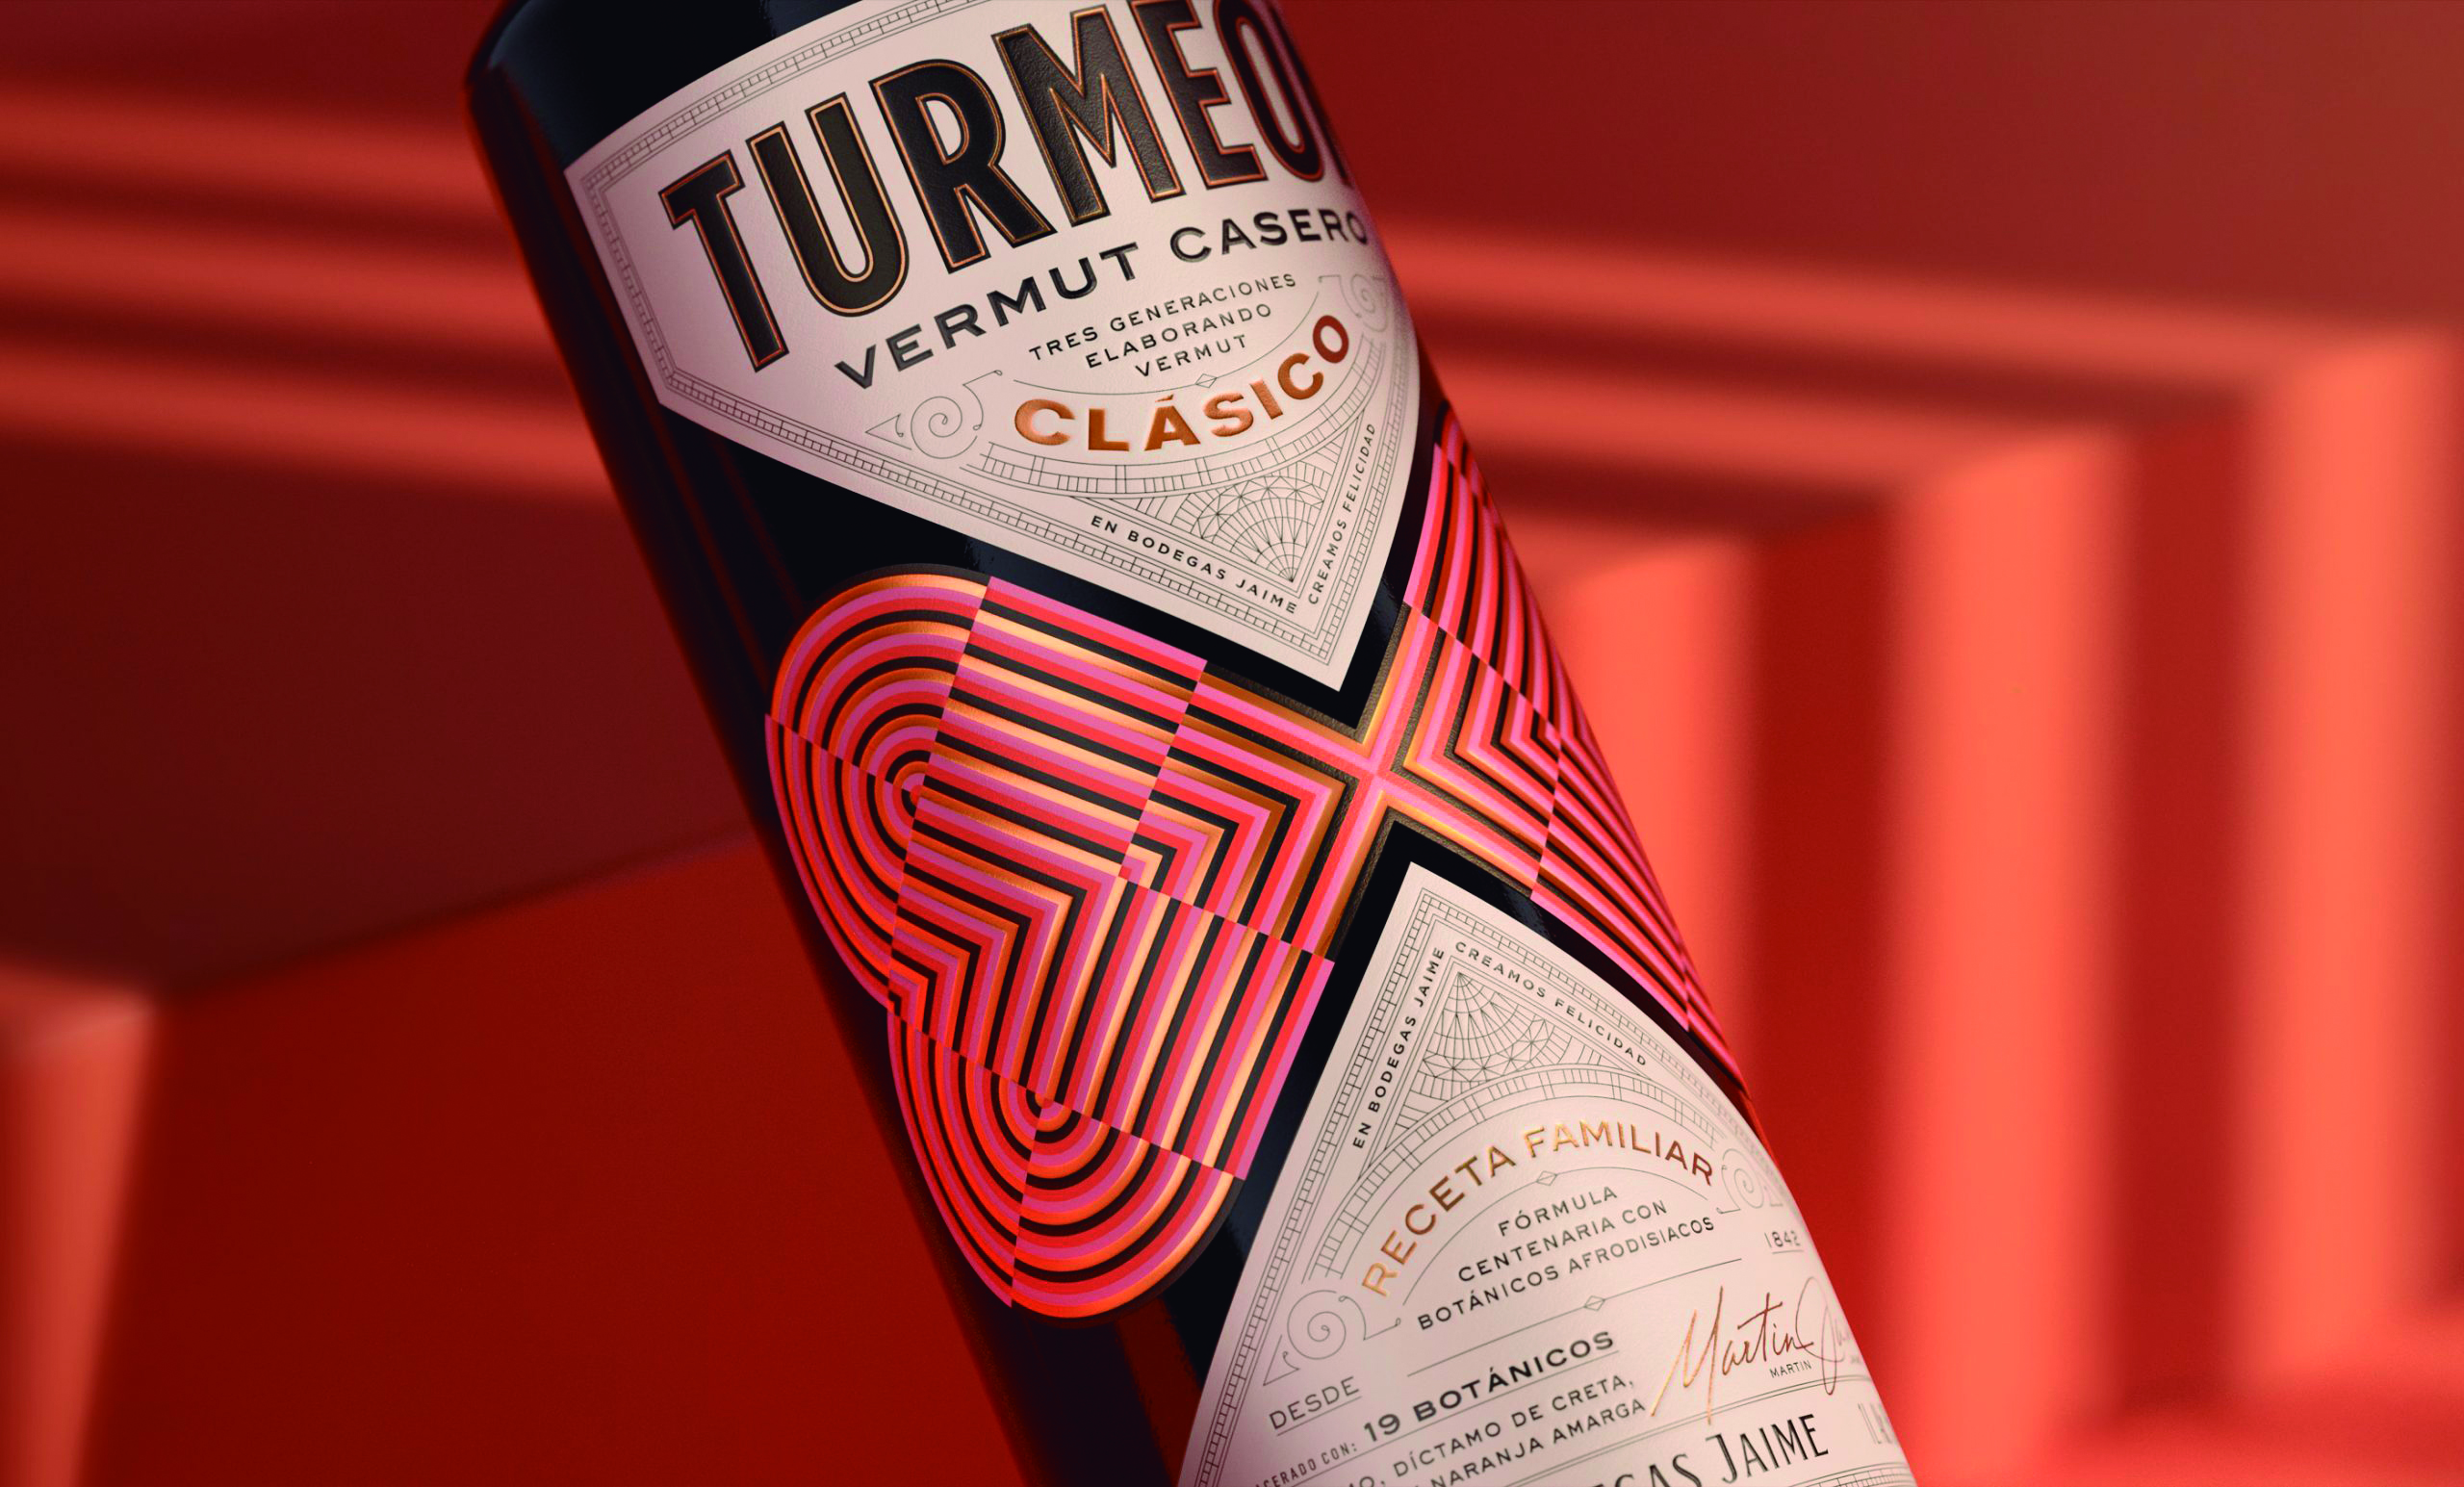 Turmeon vermouth